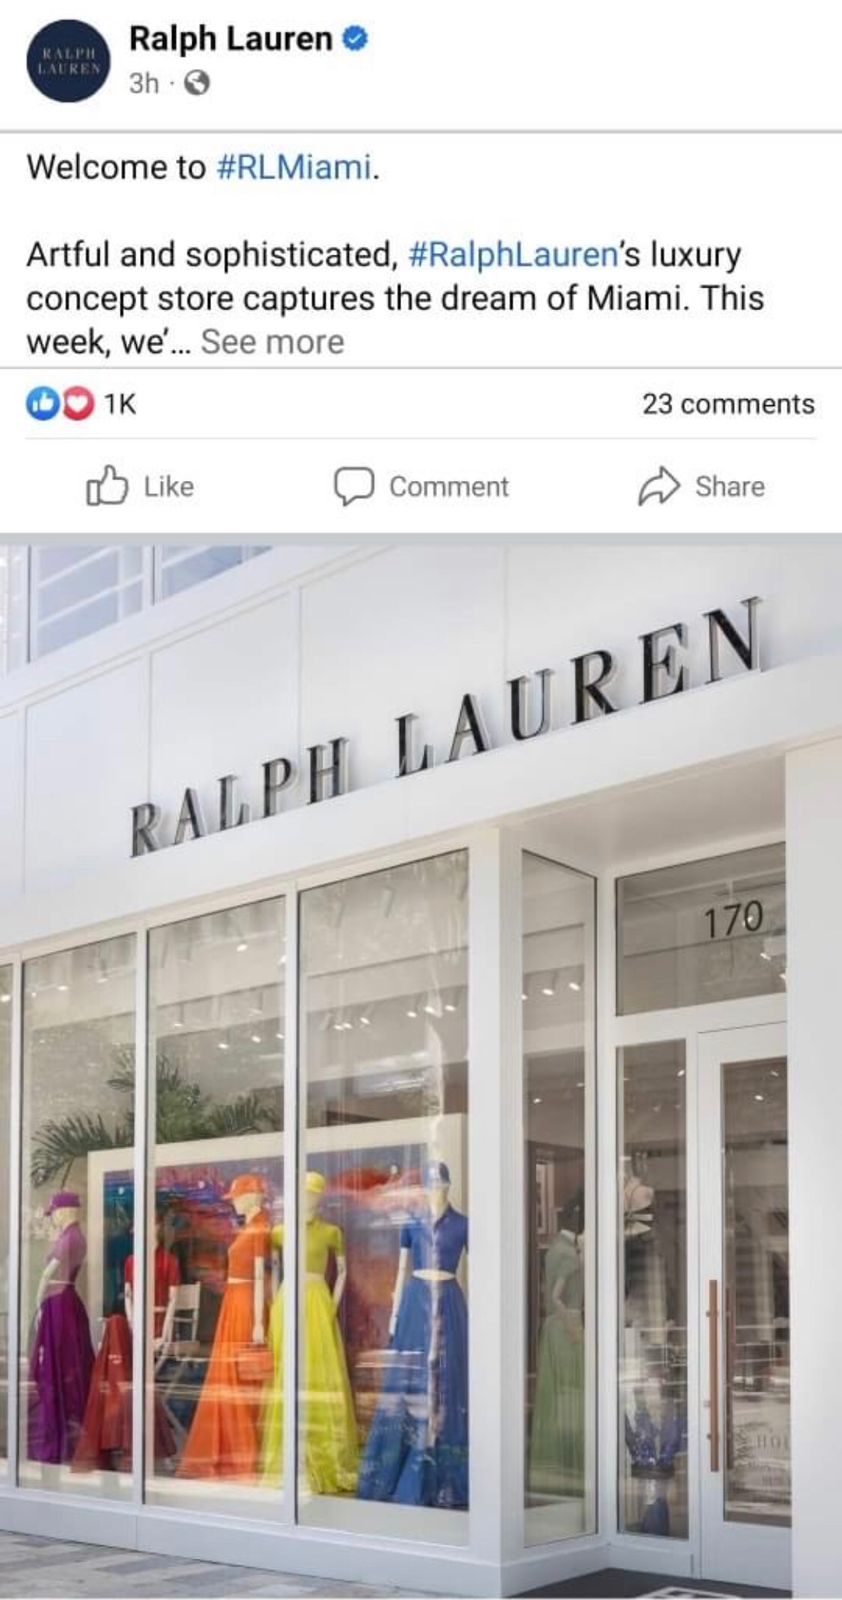 واجهة دار رالف لورين Ralph Lauren في ميامي